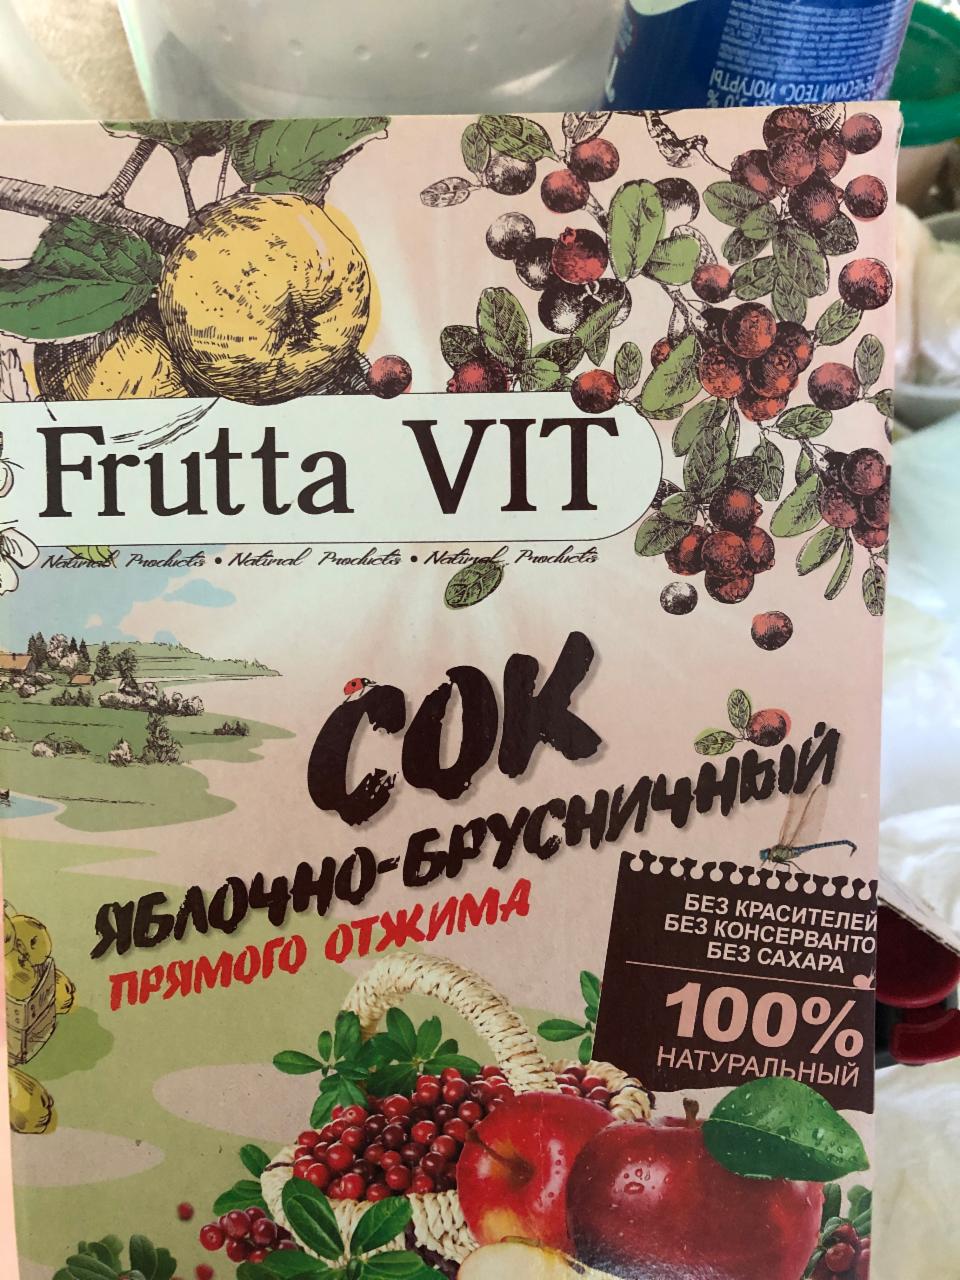 Фото - Сок яблочно-брусничный прямого отжима Frutta vit